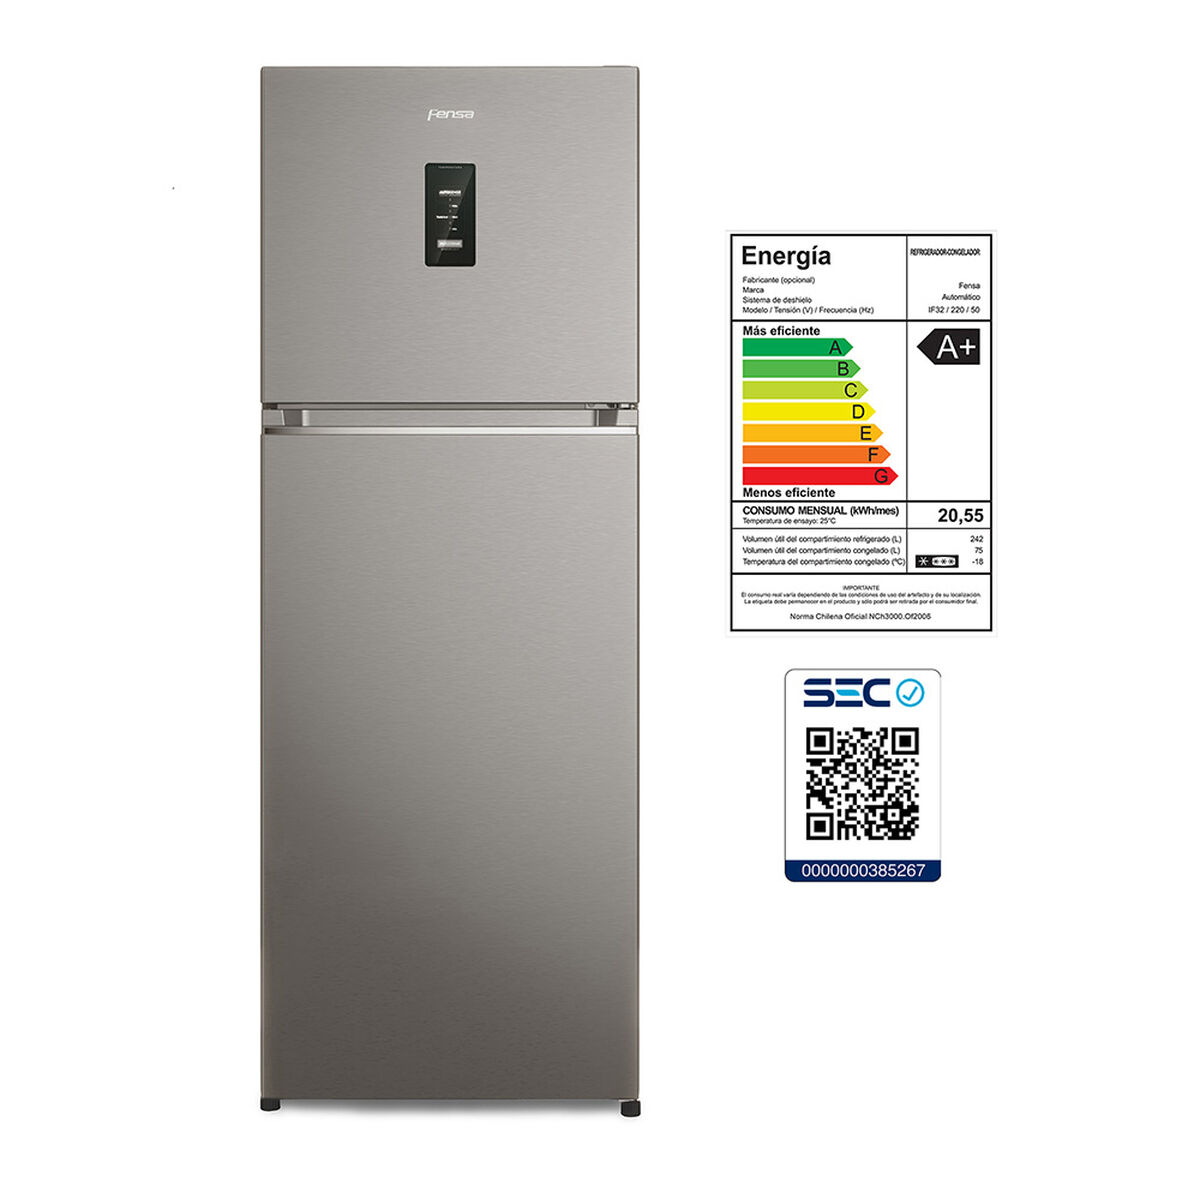 Refrigerador No Frost Fensa IF32 317 lts.